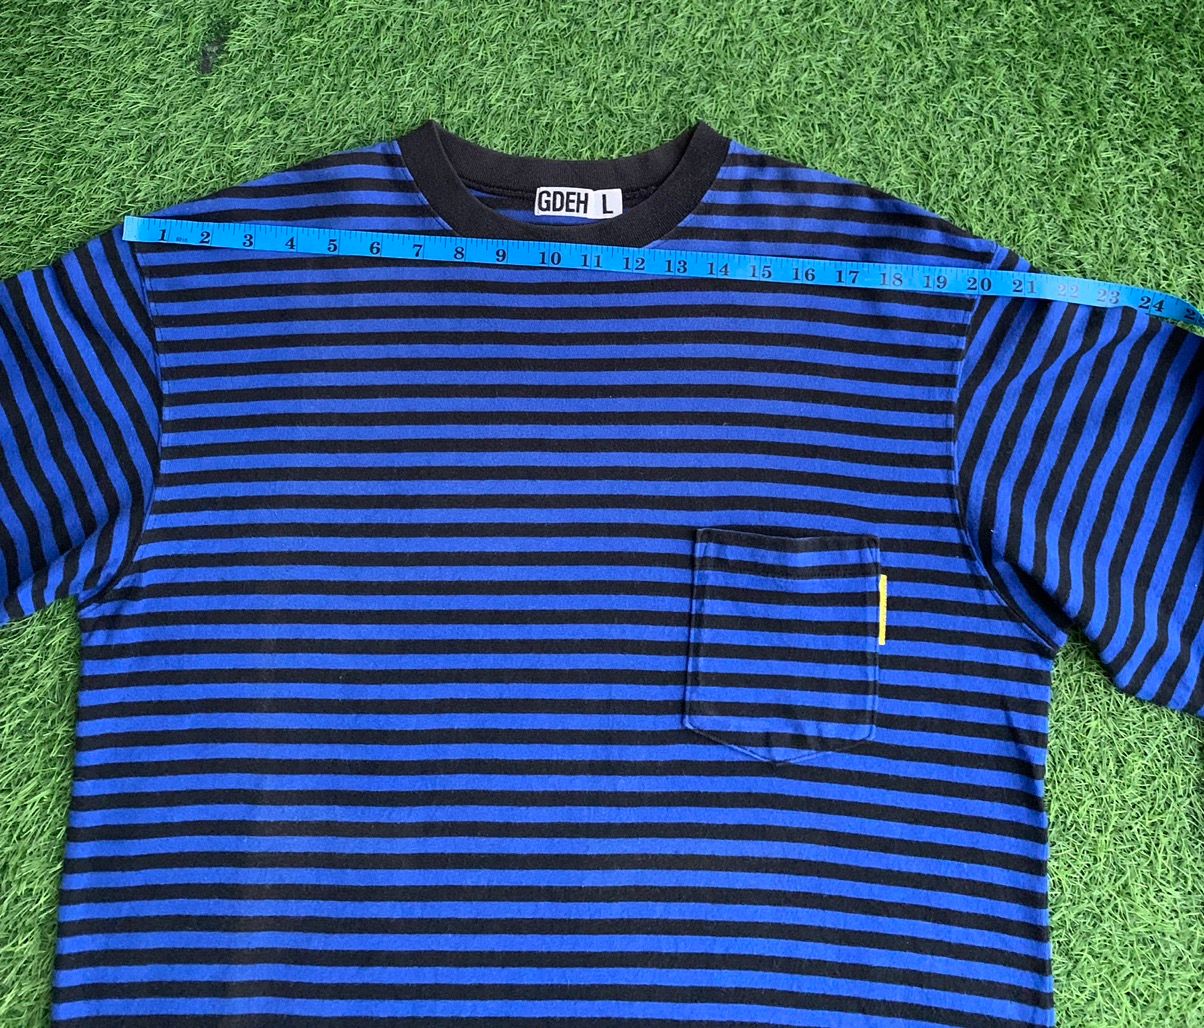 Goodenough Vinateg Good Enough Blue Striped Long Sleeve T-shirts Size US L / EU 52-54 / 3 - 16 Thumbnail